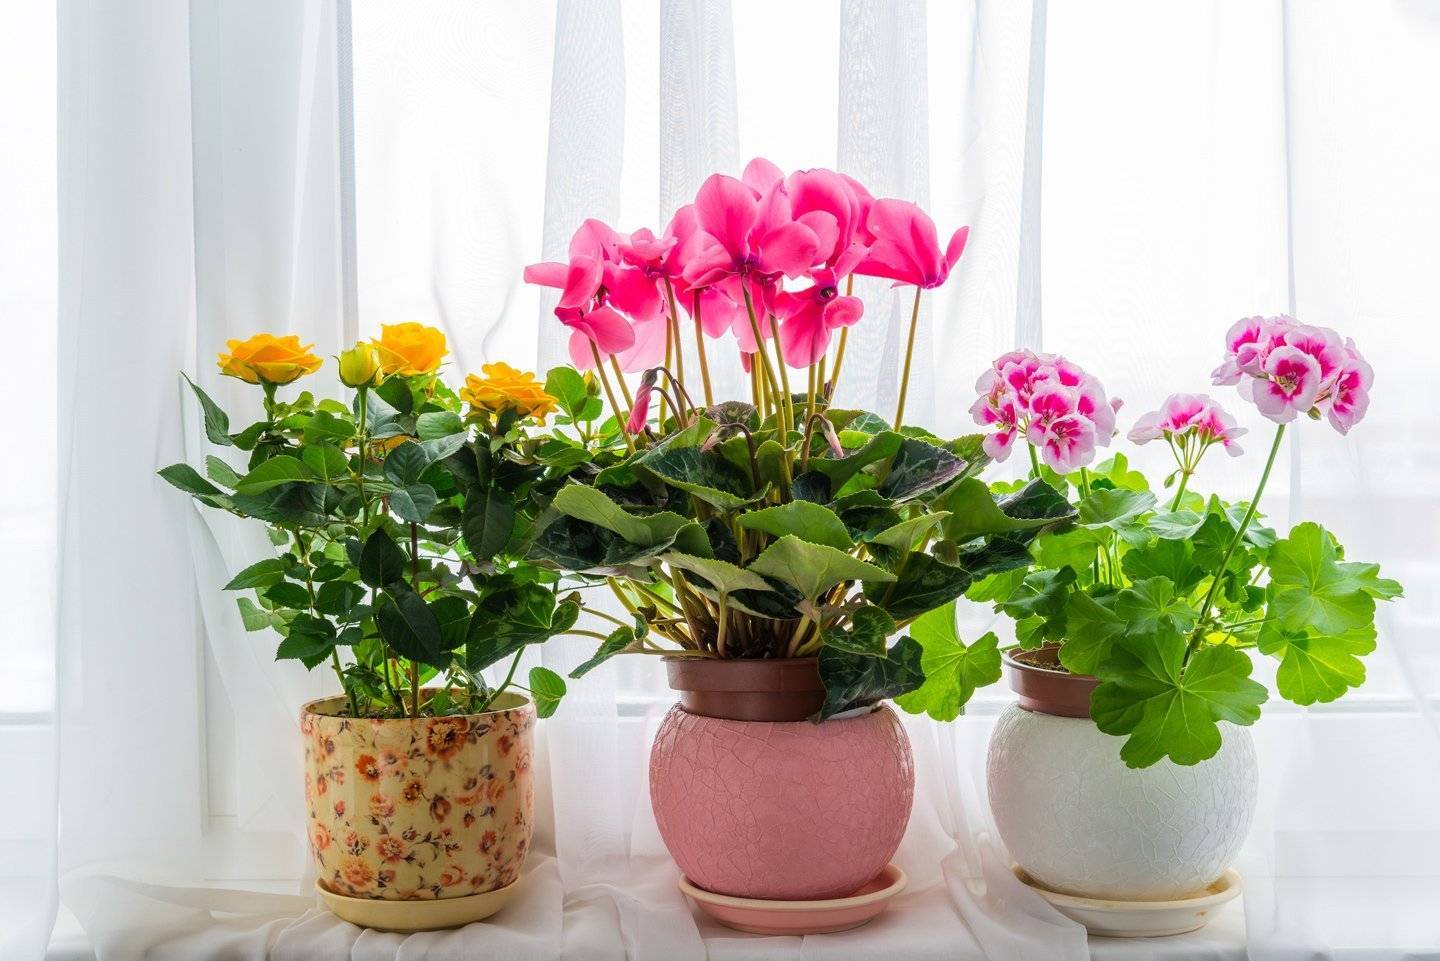 Каталог с фотографиями и названиями комнатных цветов, кратко об особенностях домашних растений